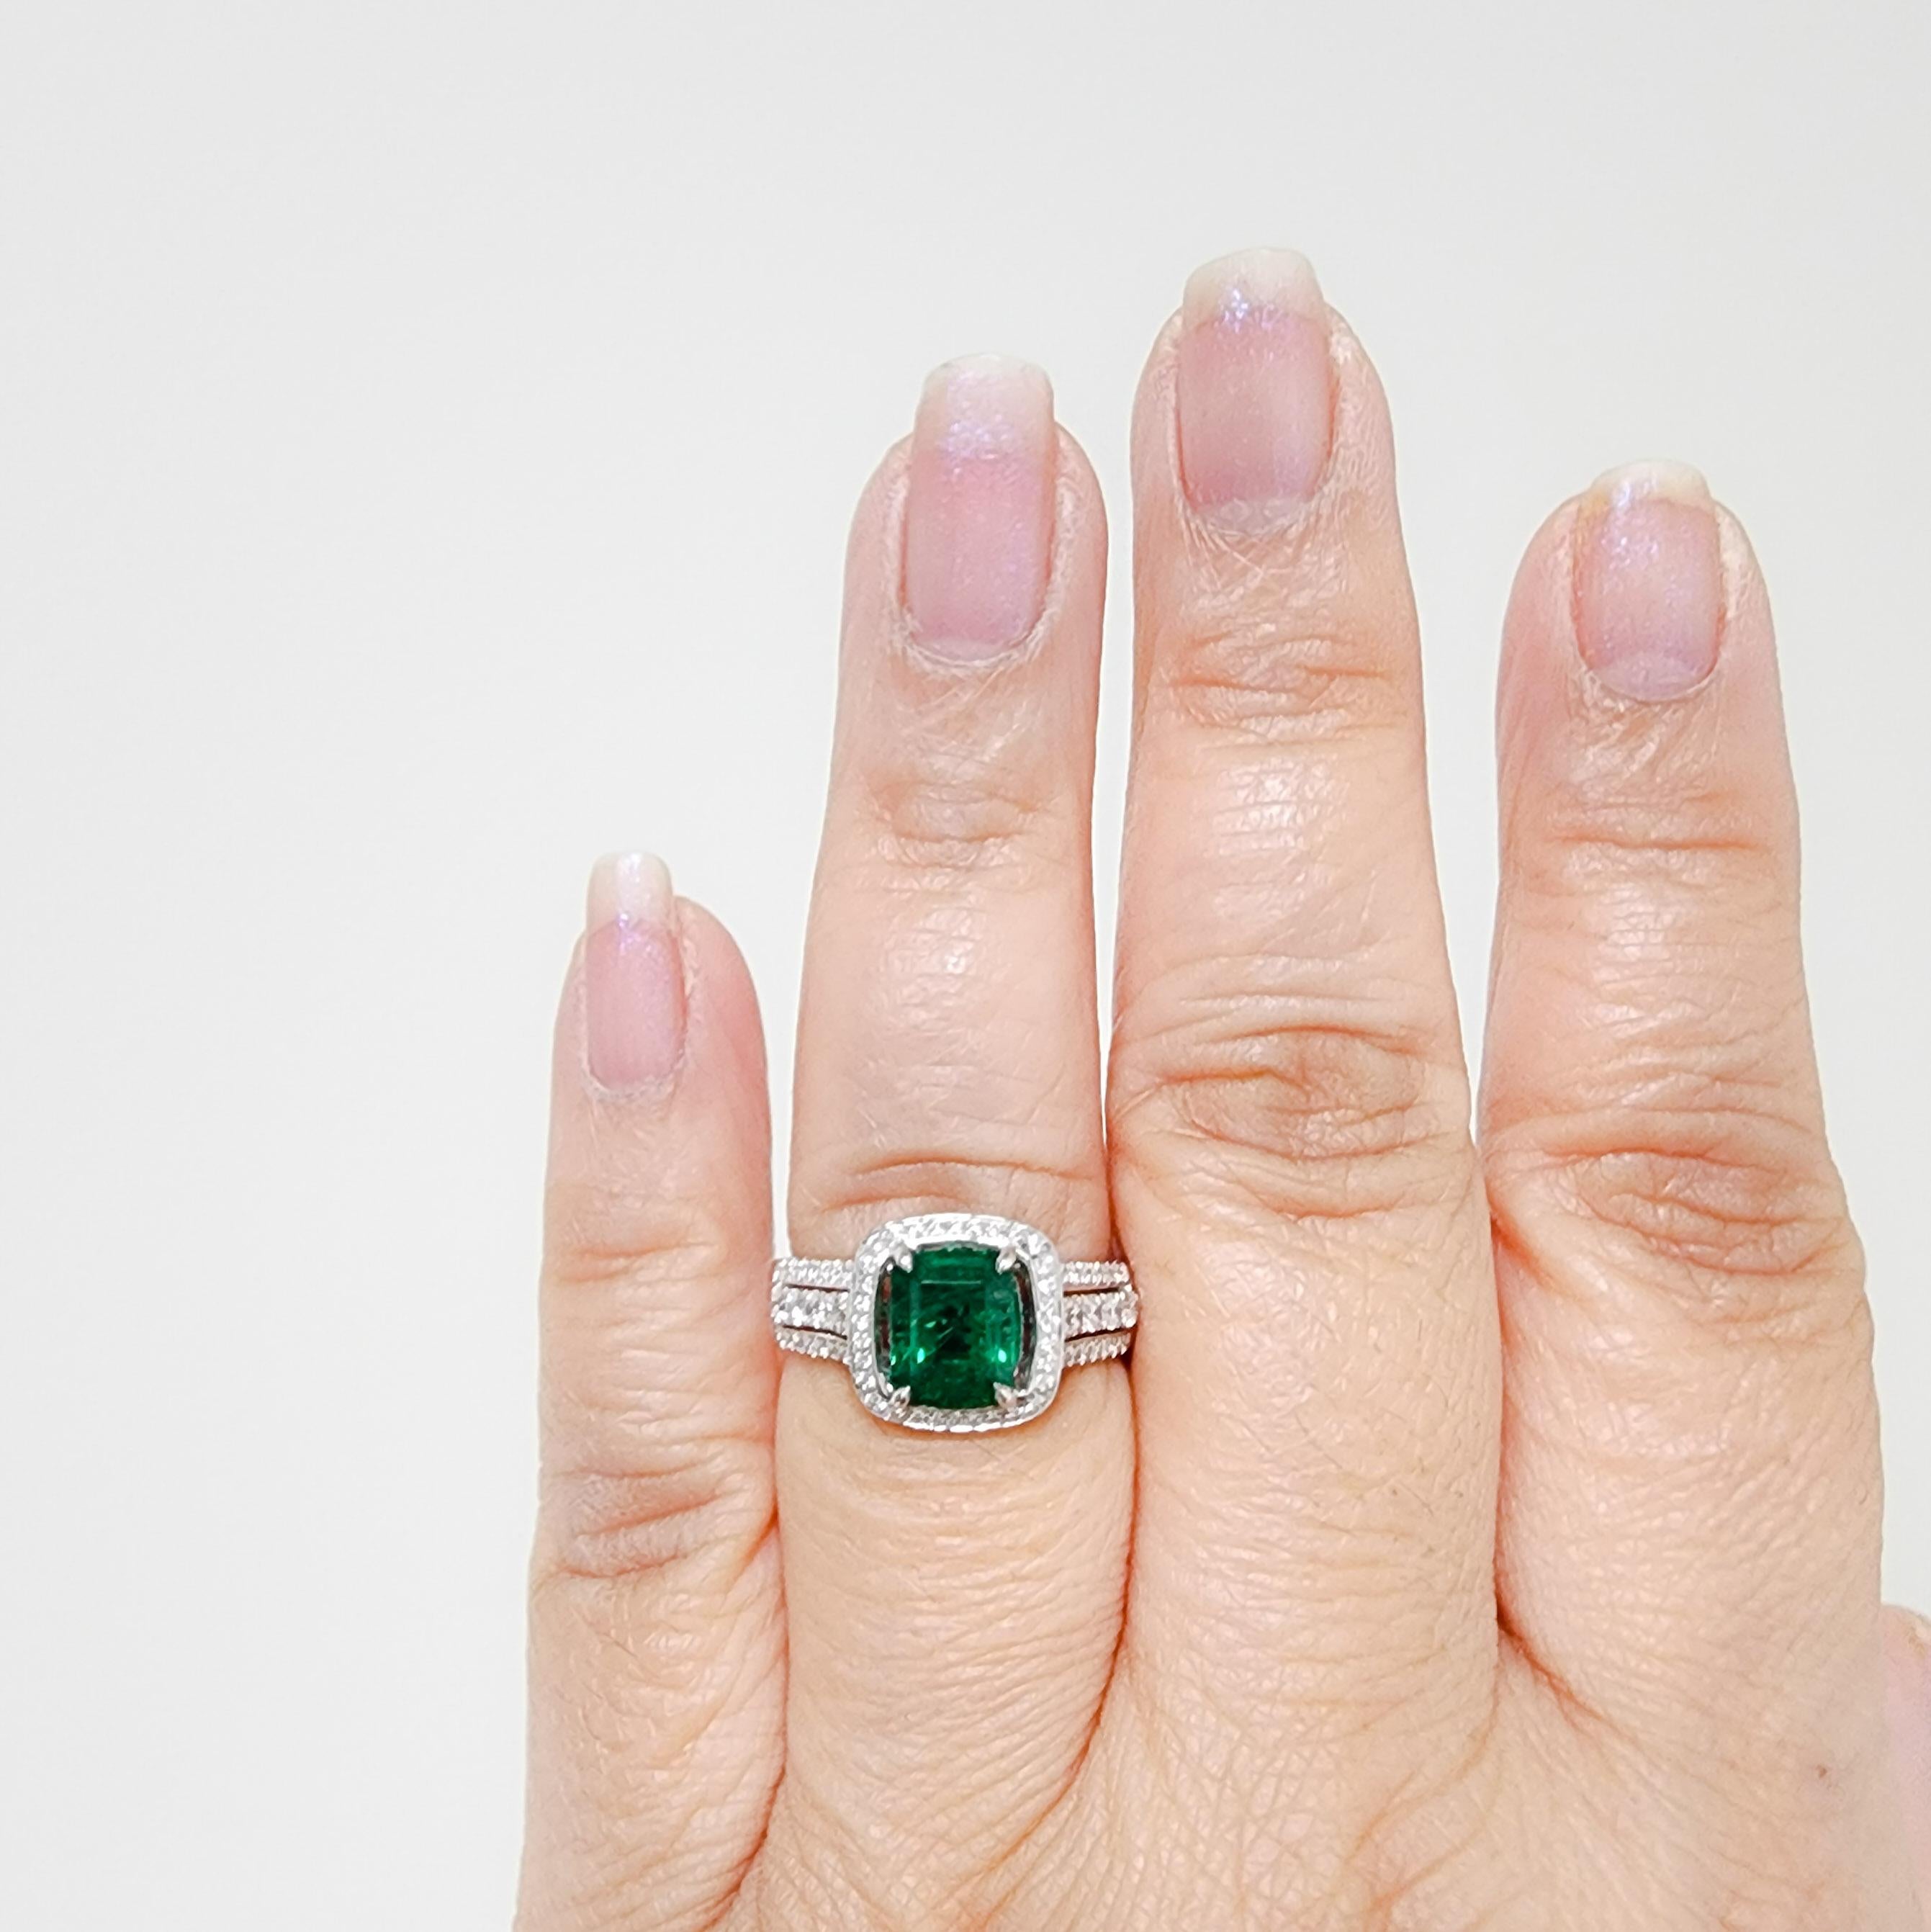 Wunderschöner 1,93 ct. Smaragd im Smaragdschliff mit 0,60 ct. weißen runden Diamanten guter Qualität.  Handgefertigt aus 18 Karat Weißgold von Simon G.  Ring Größe 8.